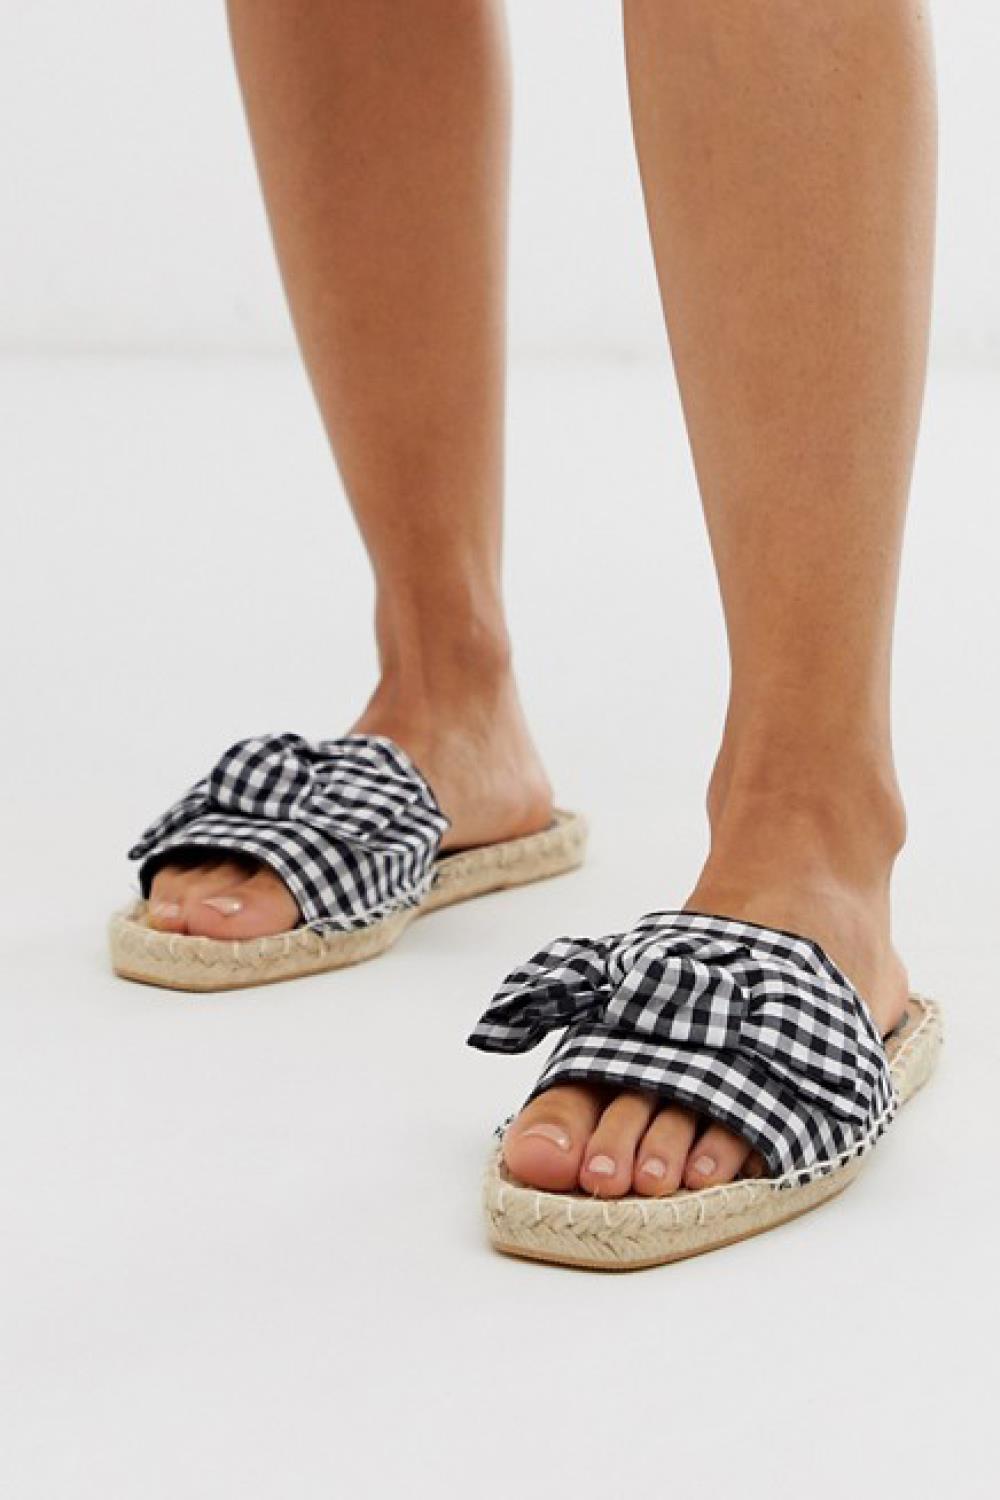 sandalias de moda rebajas 2019 asos 16,99€